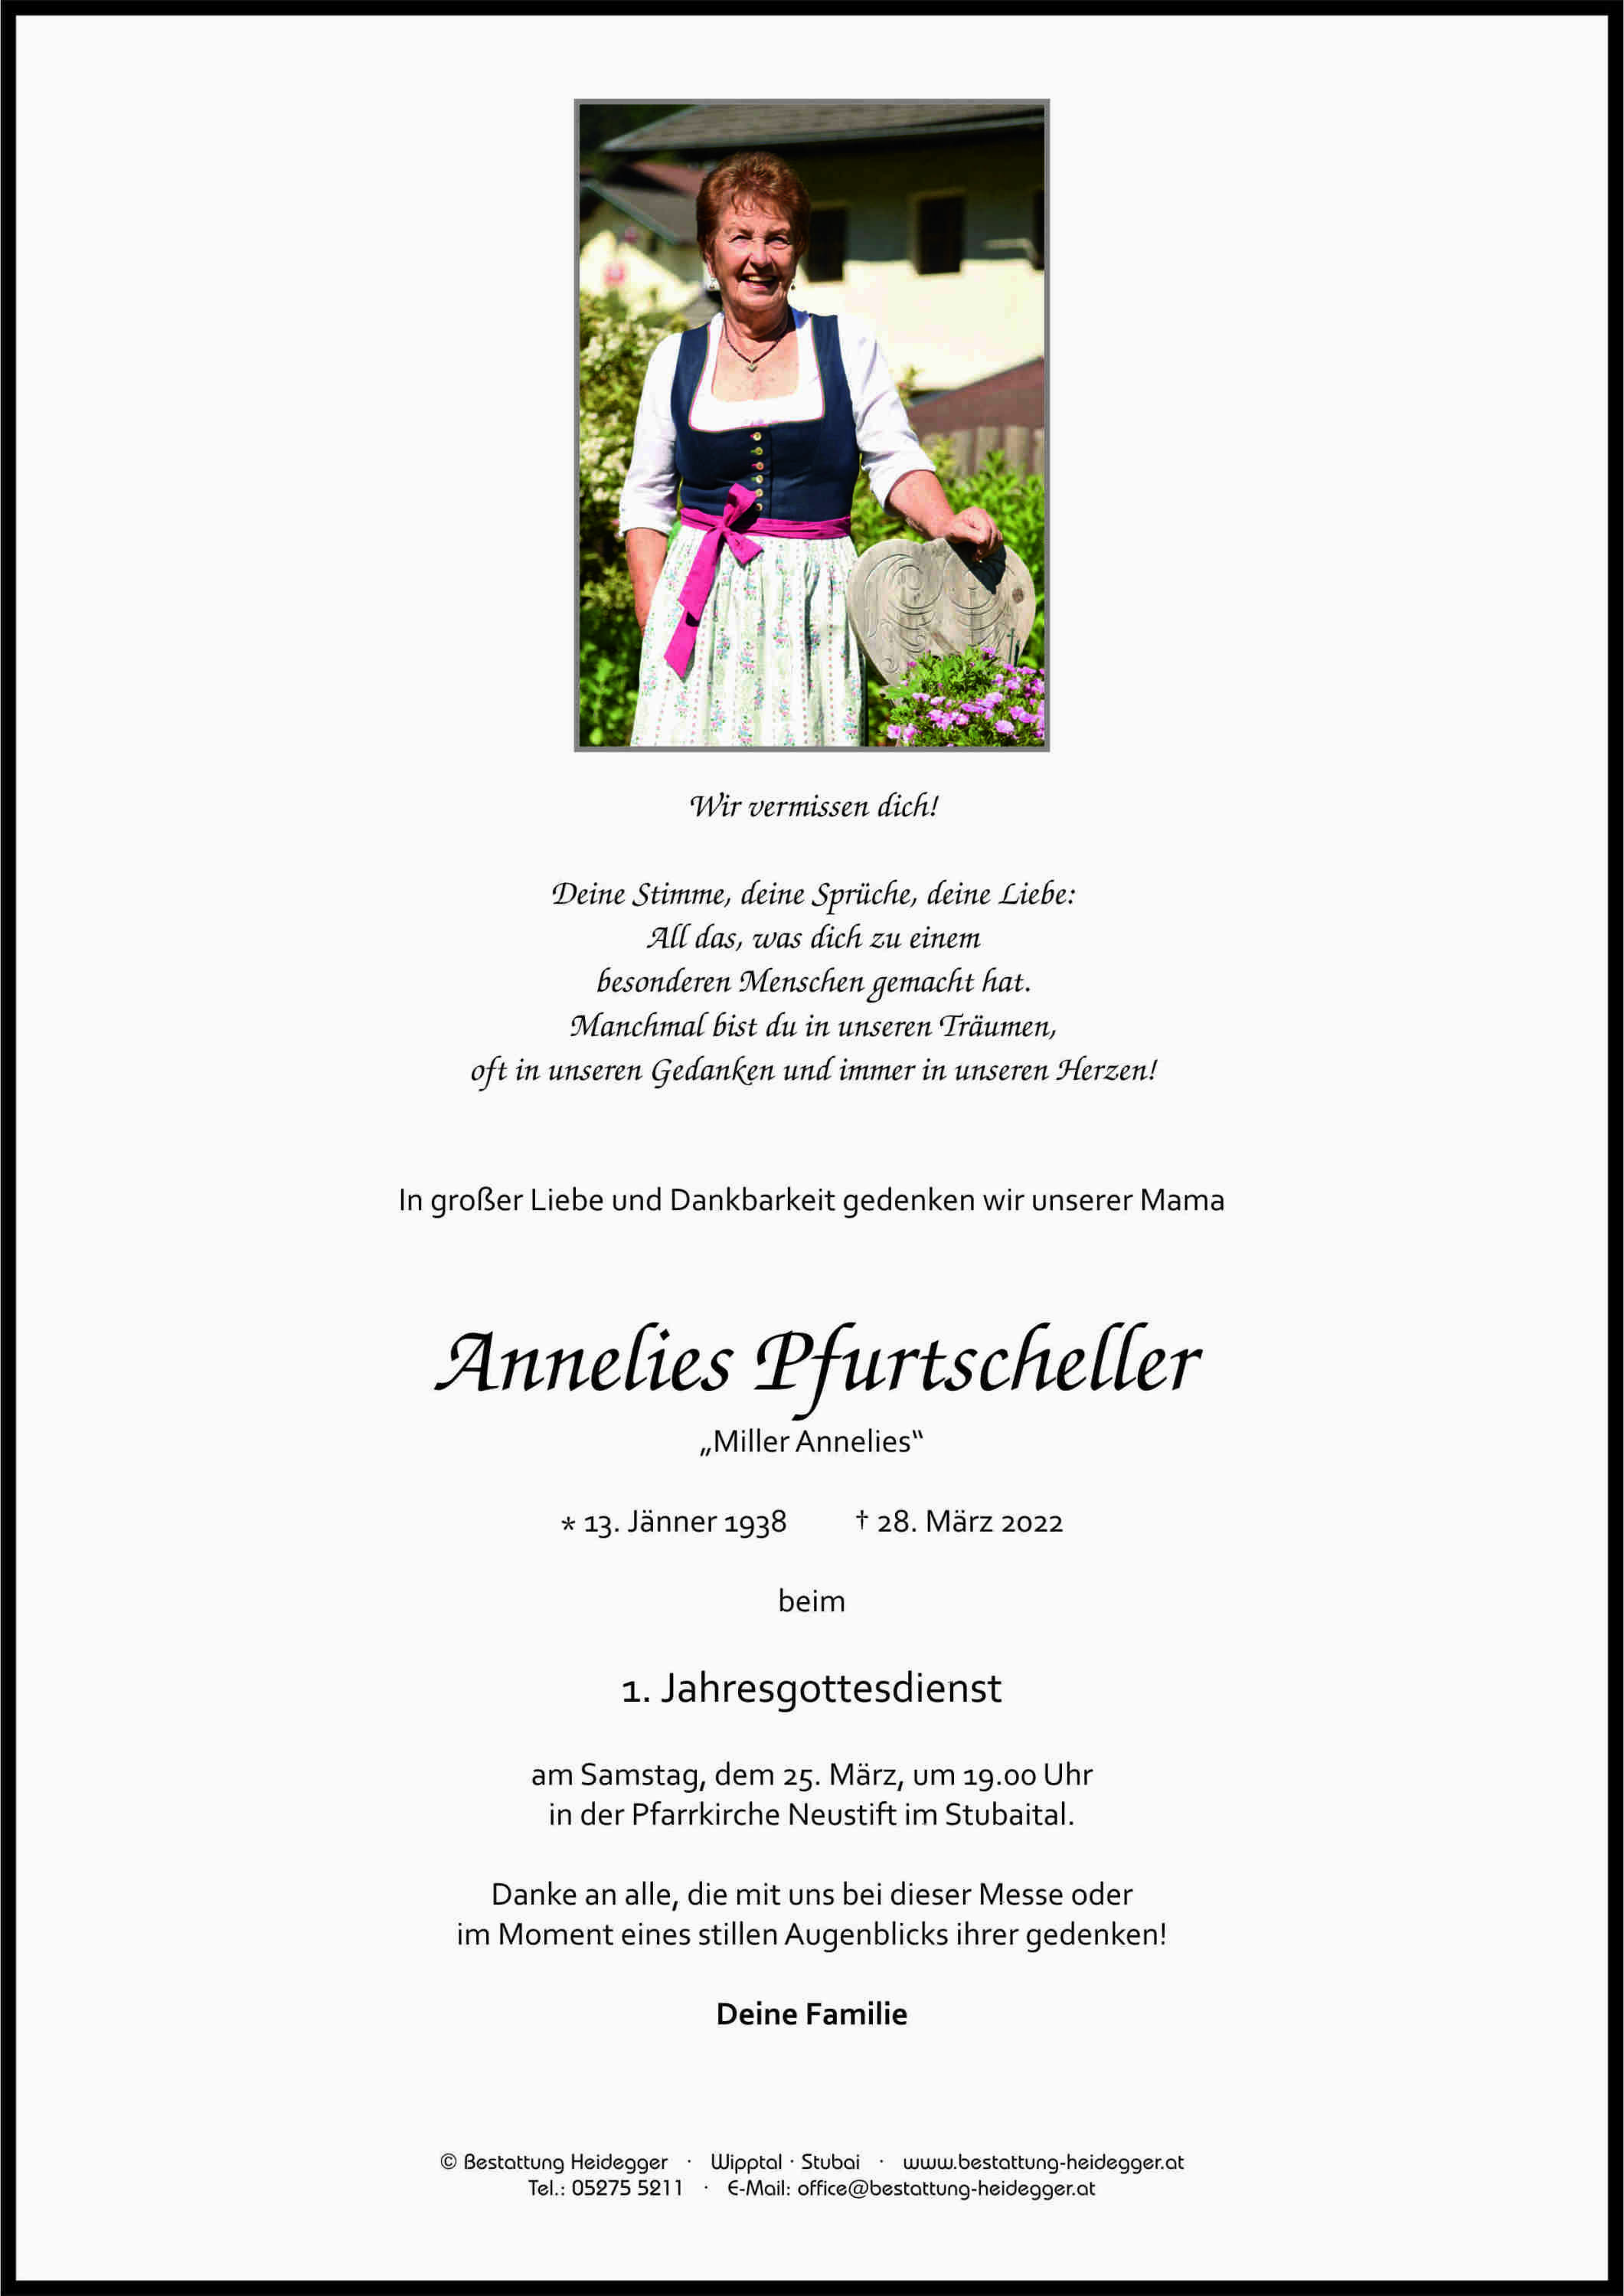 Annelies Pfurtscheller